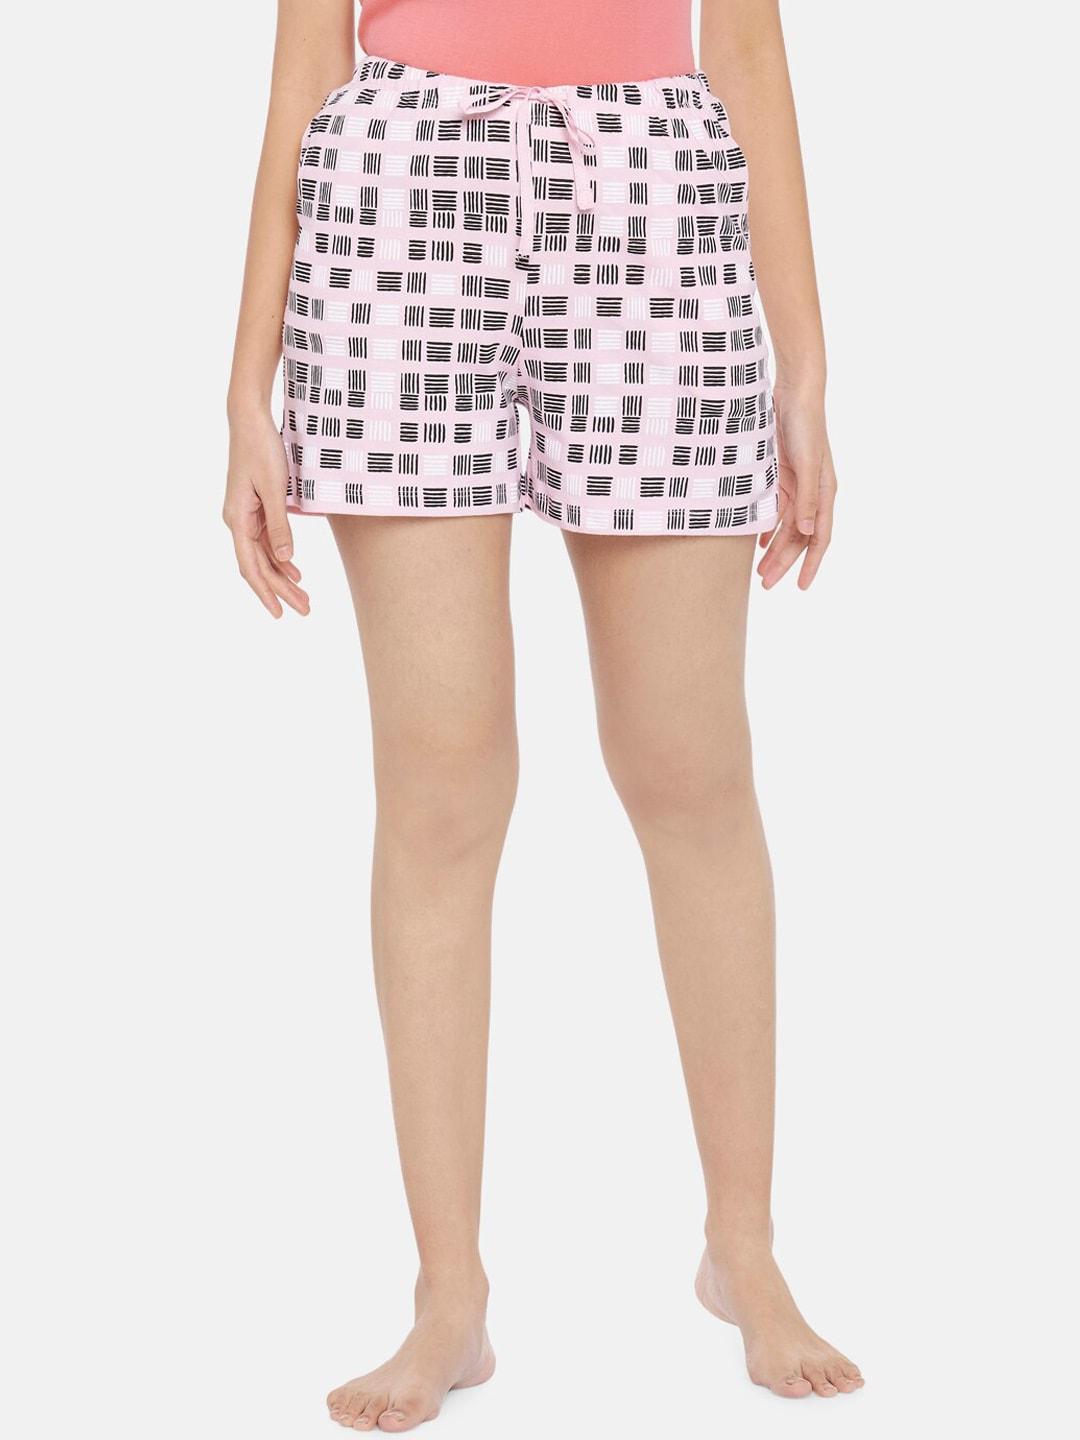 dreamz-by-pantaloons-women-pink-printed-regular-lounge-shorts